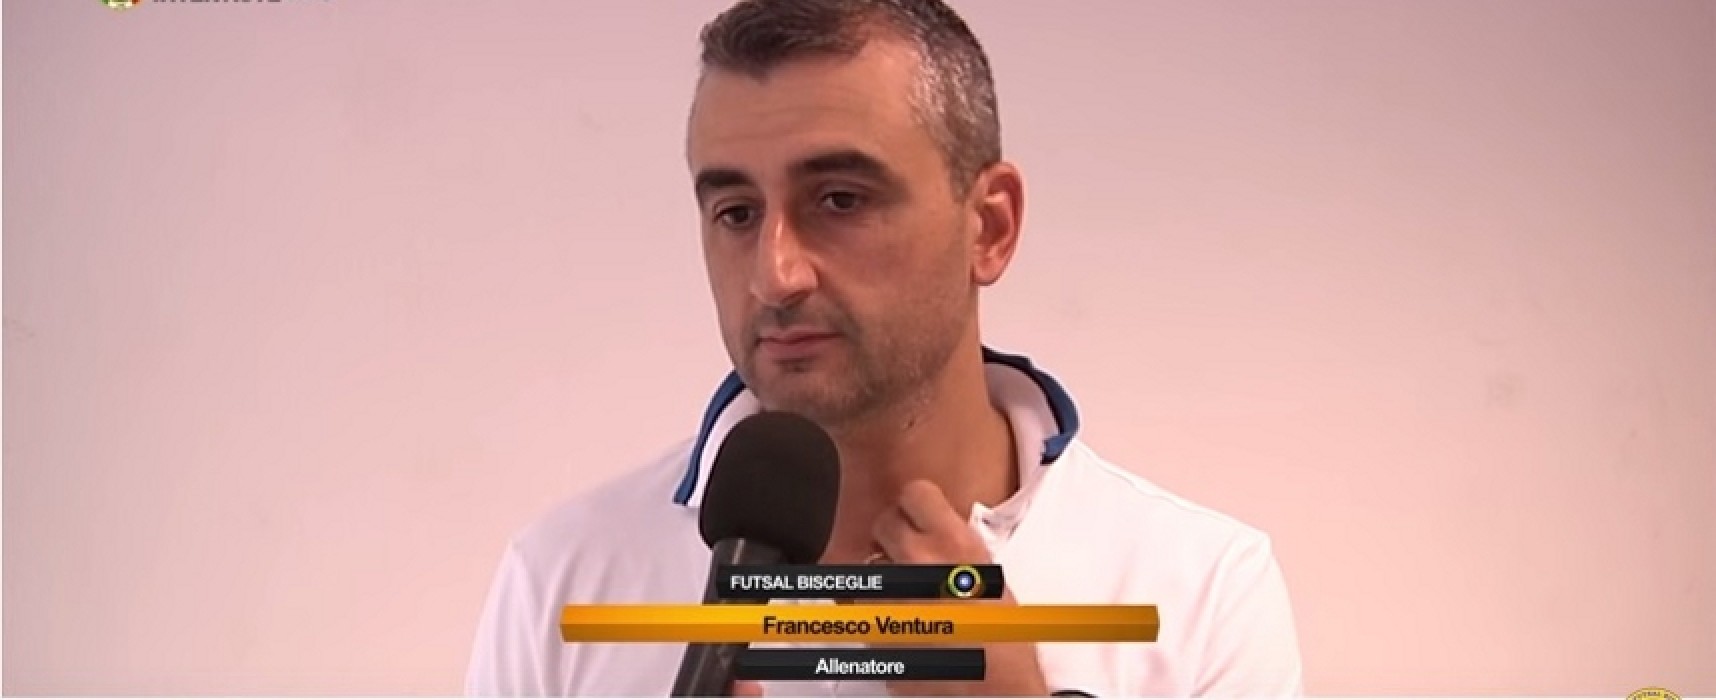 Futsal Bisceglie, mister Ventura: “La squadra ha grossi margini di miglioramento”/VIDEO